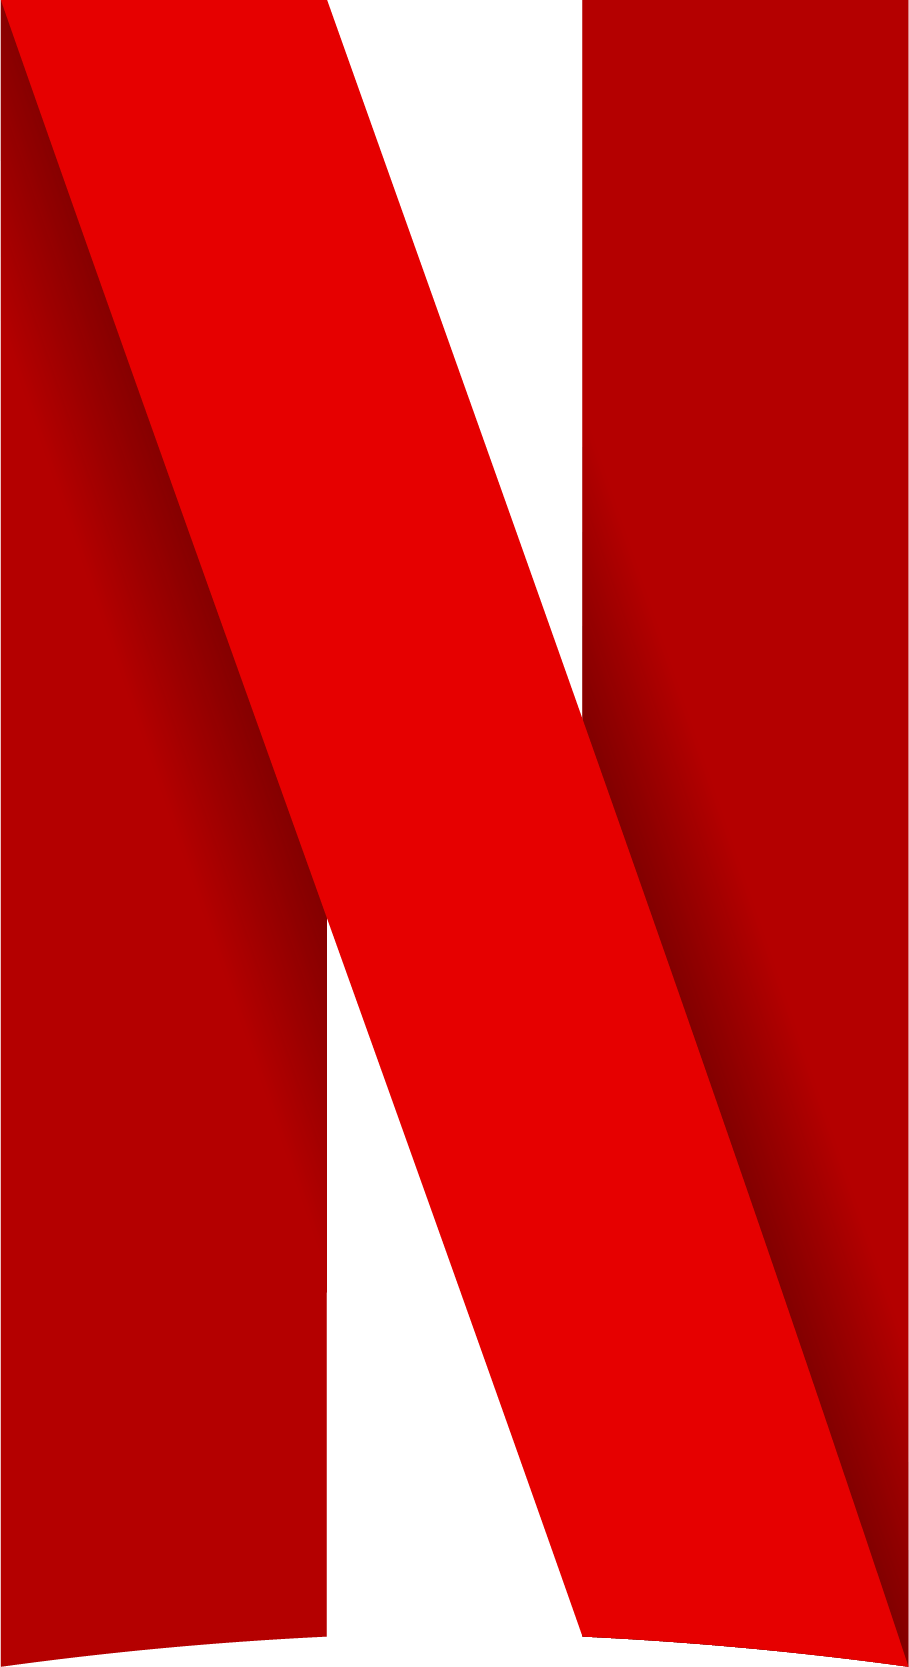 Nwtflix Logo - Netflix | Logopedia | FANDOM powered by Wikia